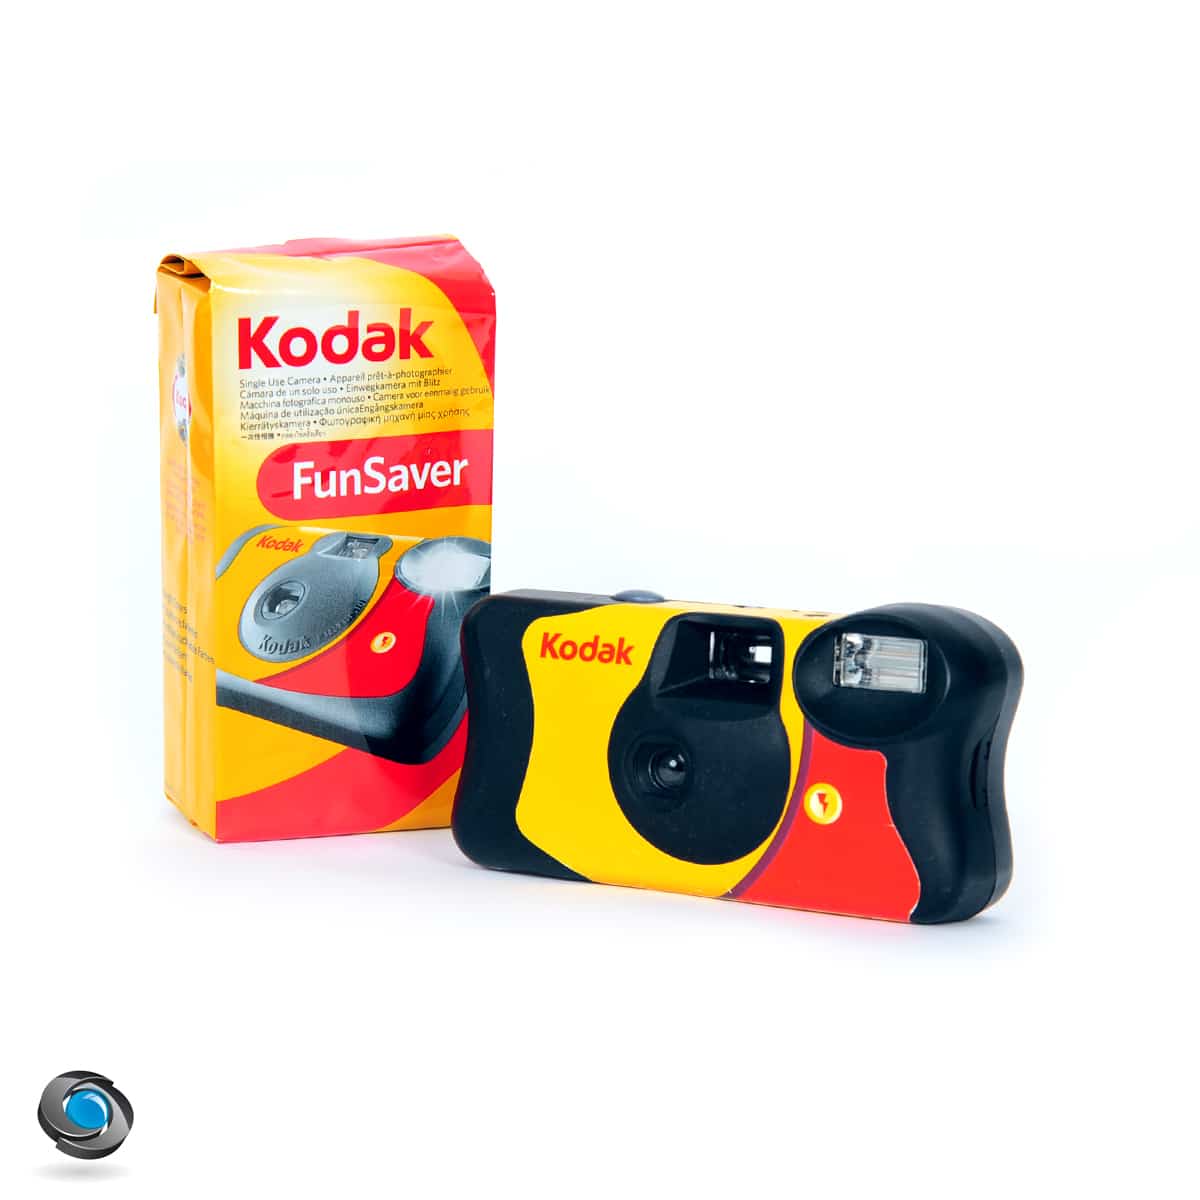 Film pour appareil photo Kodak à usage unique, jetable, bobine analogique  pour documents. Facile à utiliser. 27/39 photos.